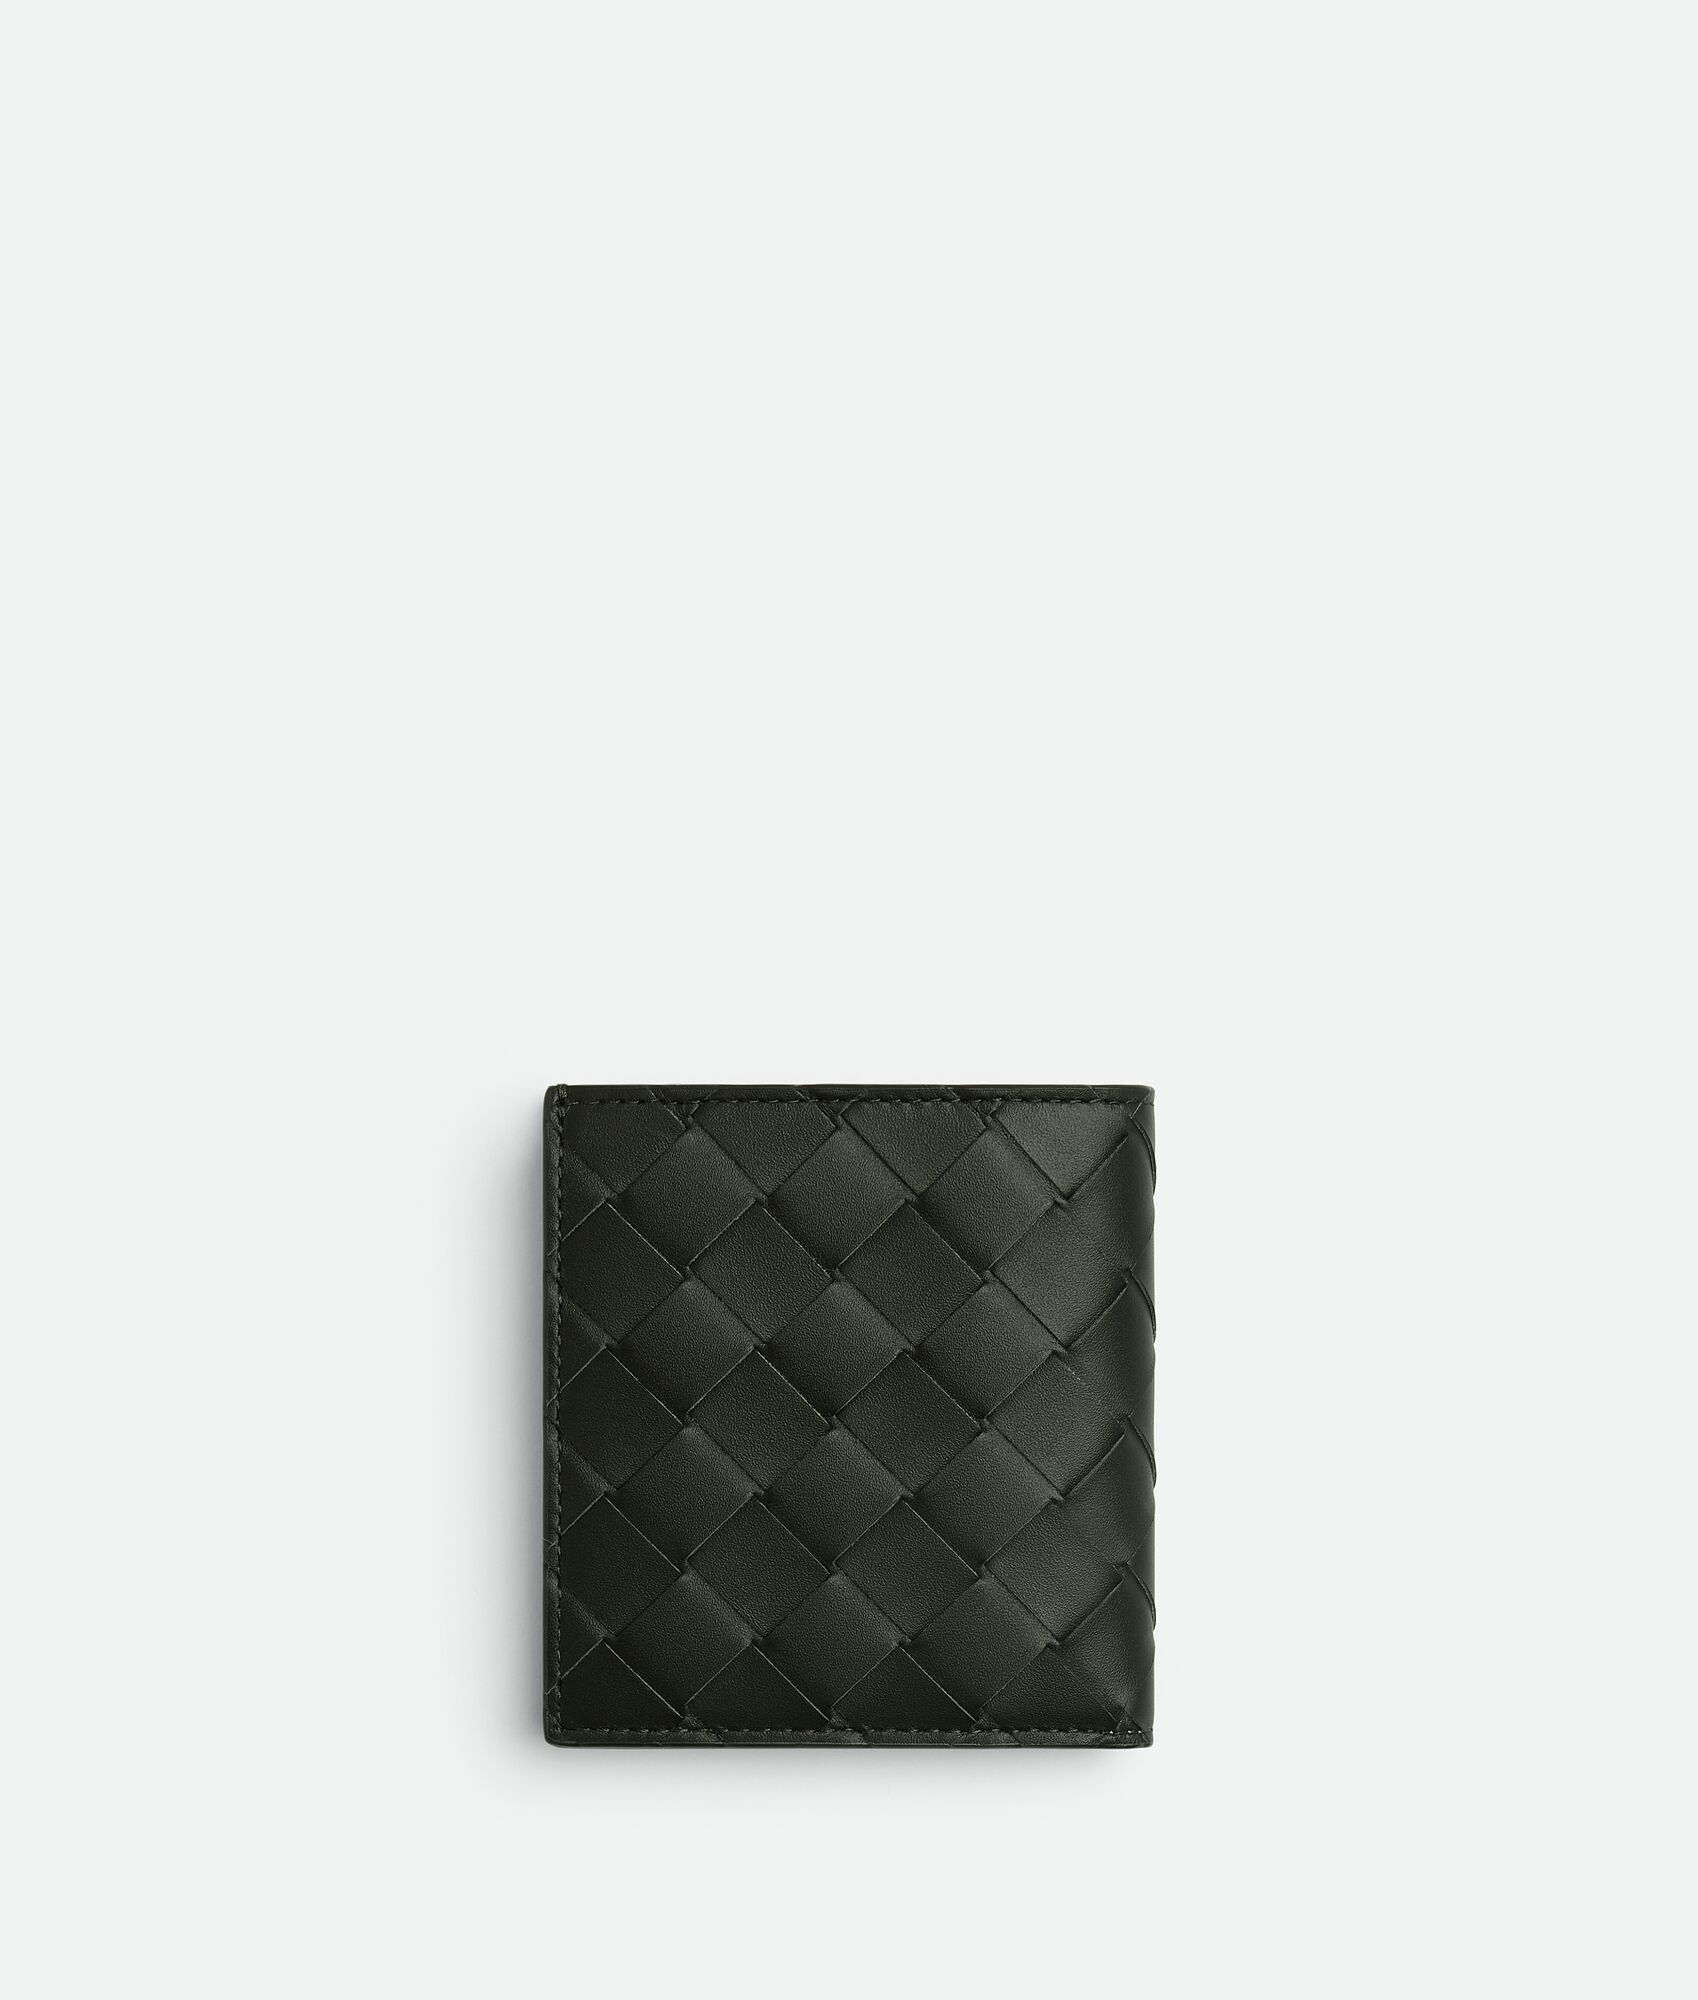 Bottega Veneta® Men's Intrecciato Slim Bi-Fold Wallet in Dark Green ...